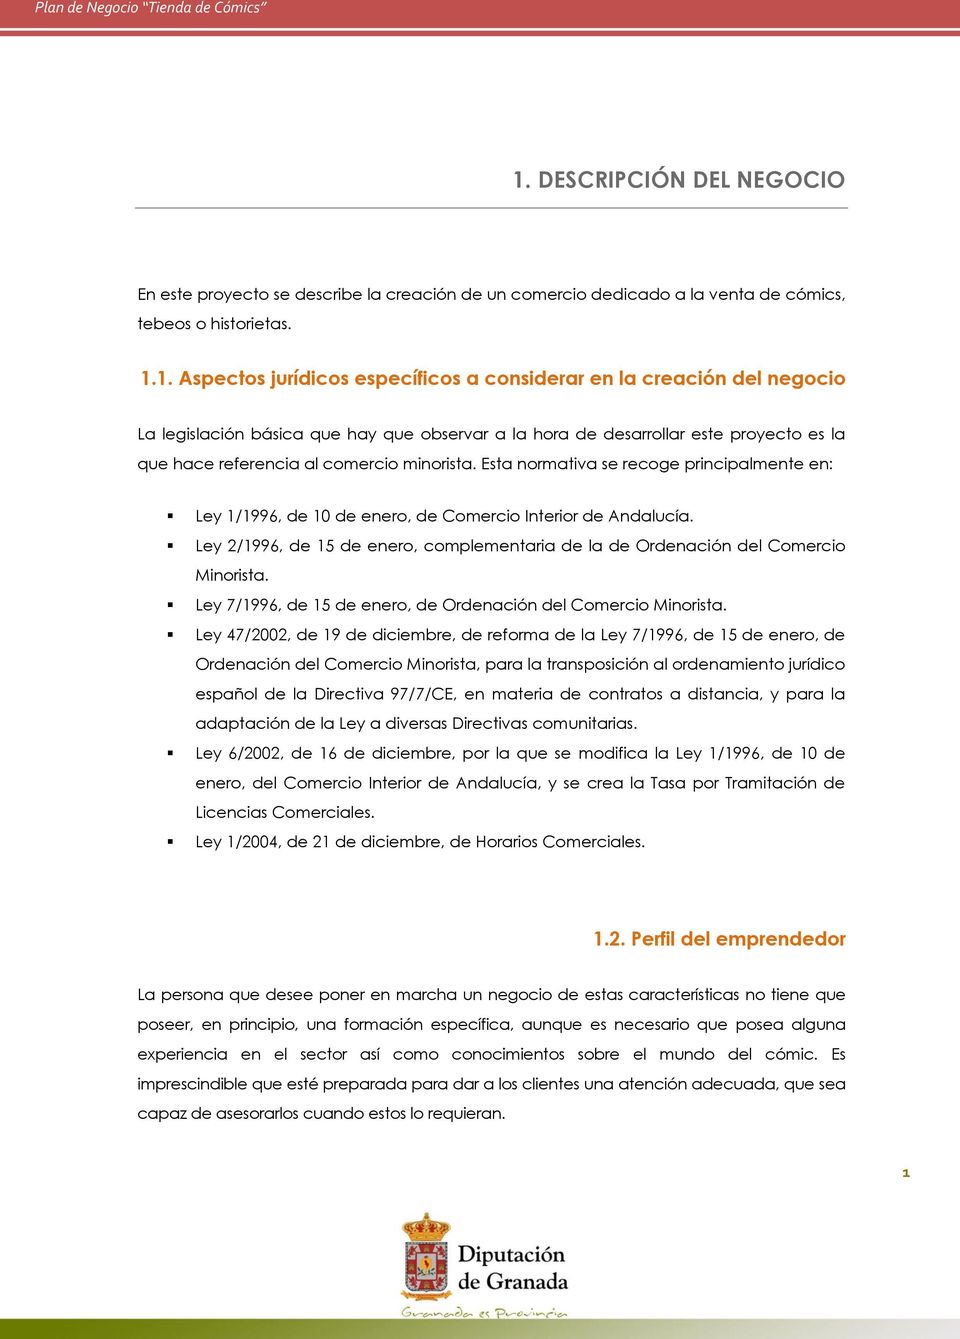 Esta normativa se recoge principalmente en: Ley 1/1996, de 10 de enero, de Comercio Interior de Andalucía. Ley 2/1996, de 15 de enero, complementaria de la de Ordenación del Comercio Minorista.